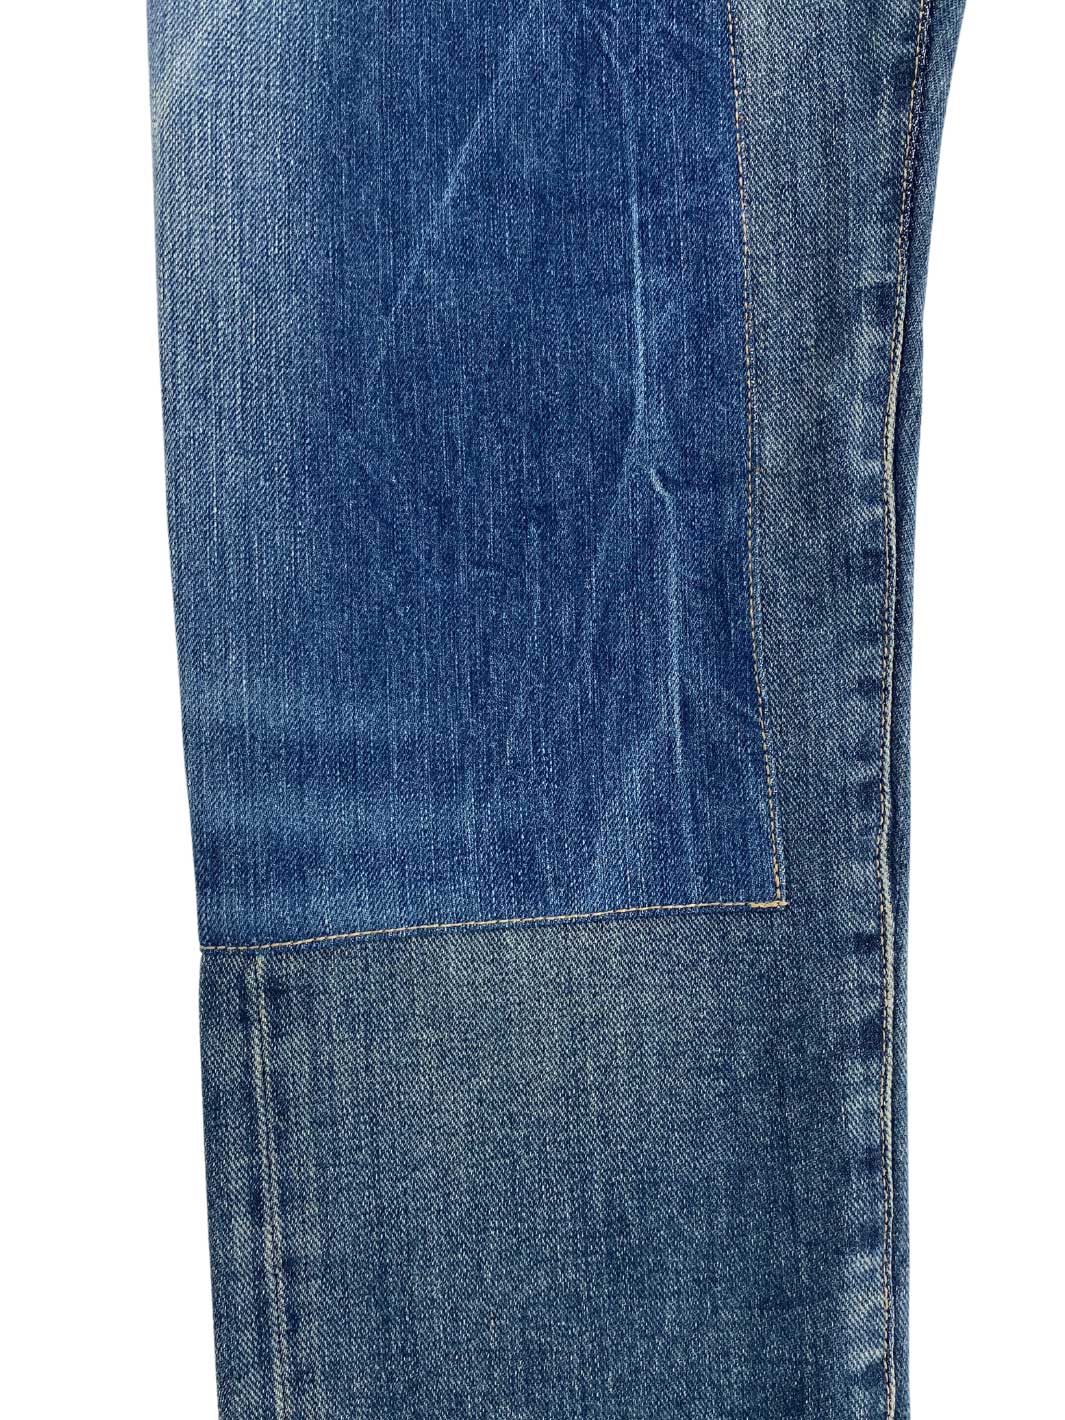 Herren Vintage Denim Größe 30/32 mittelbalue Waschung verstärktes Bein 100% Baumwolle